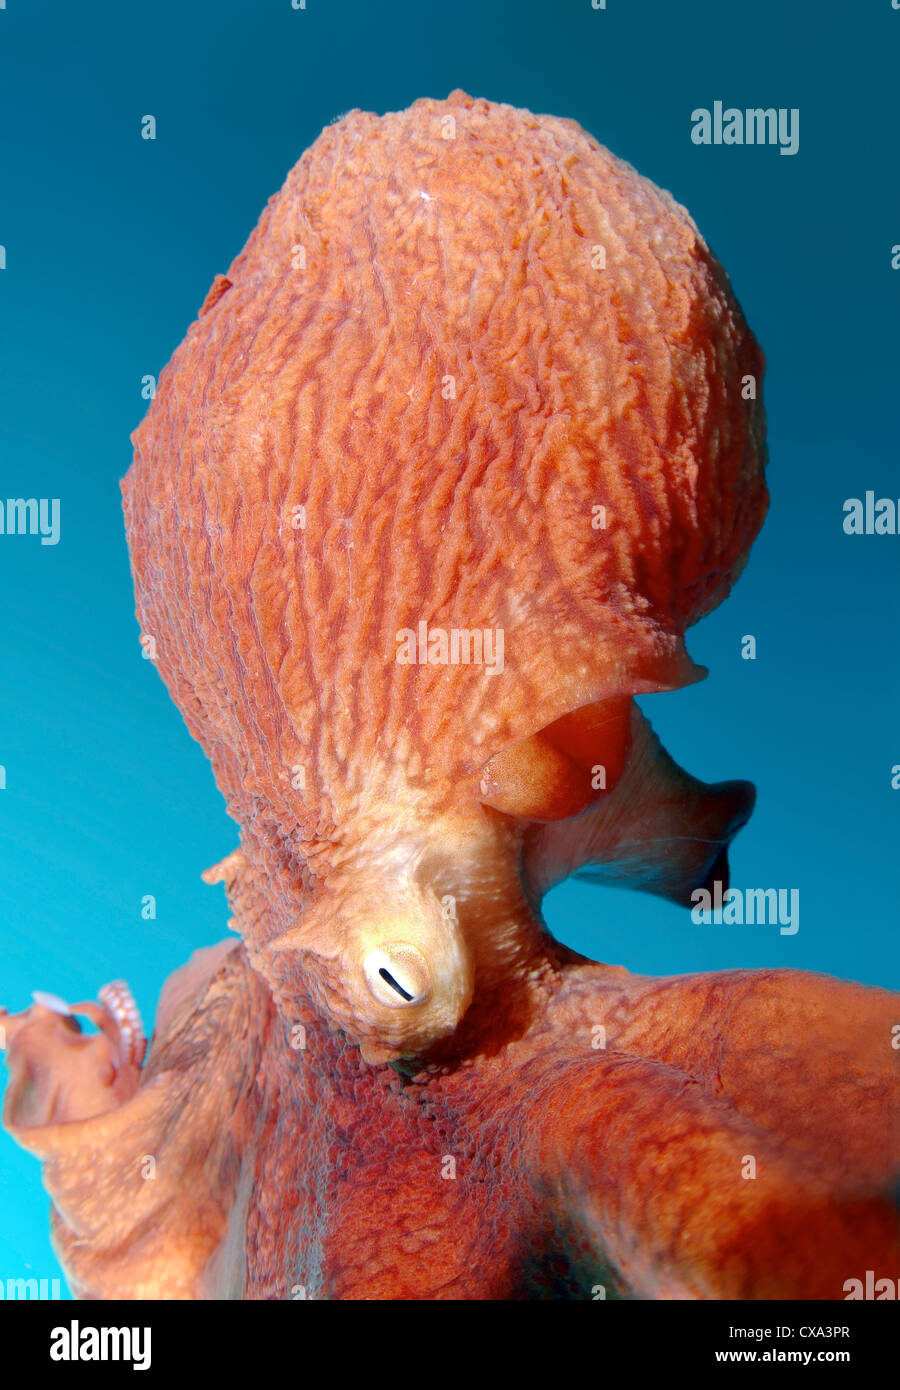 Gigante polpo del Pacifico o del Pacifico del Nord polpo gigante, (Enteroctopus dofleini) Giappone Mare, Estremo Oriente, Primorsky Krai, Russia Foto Stock